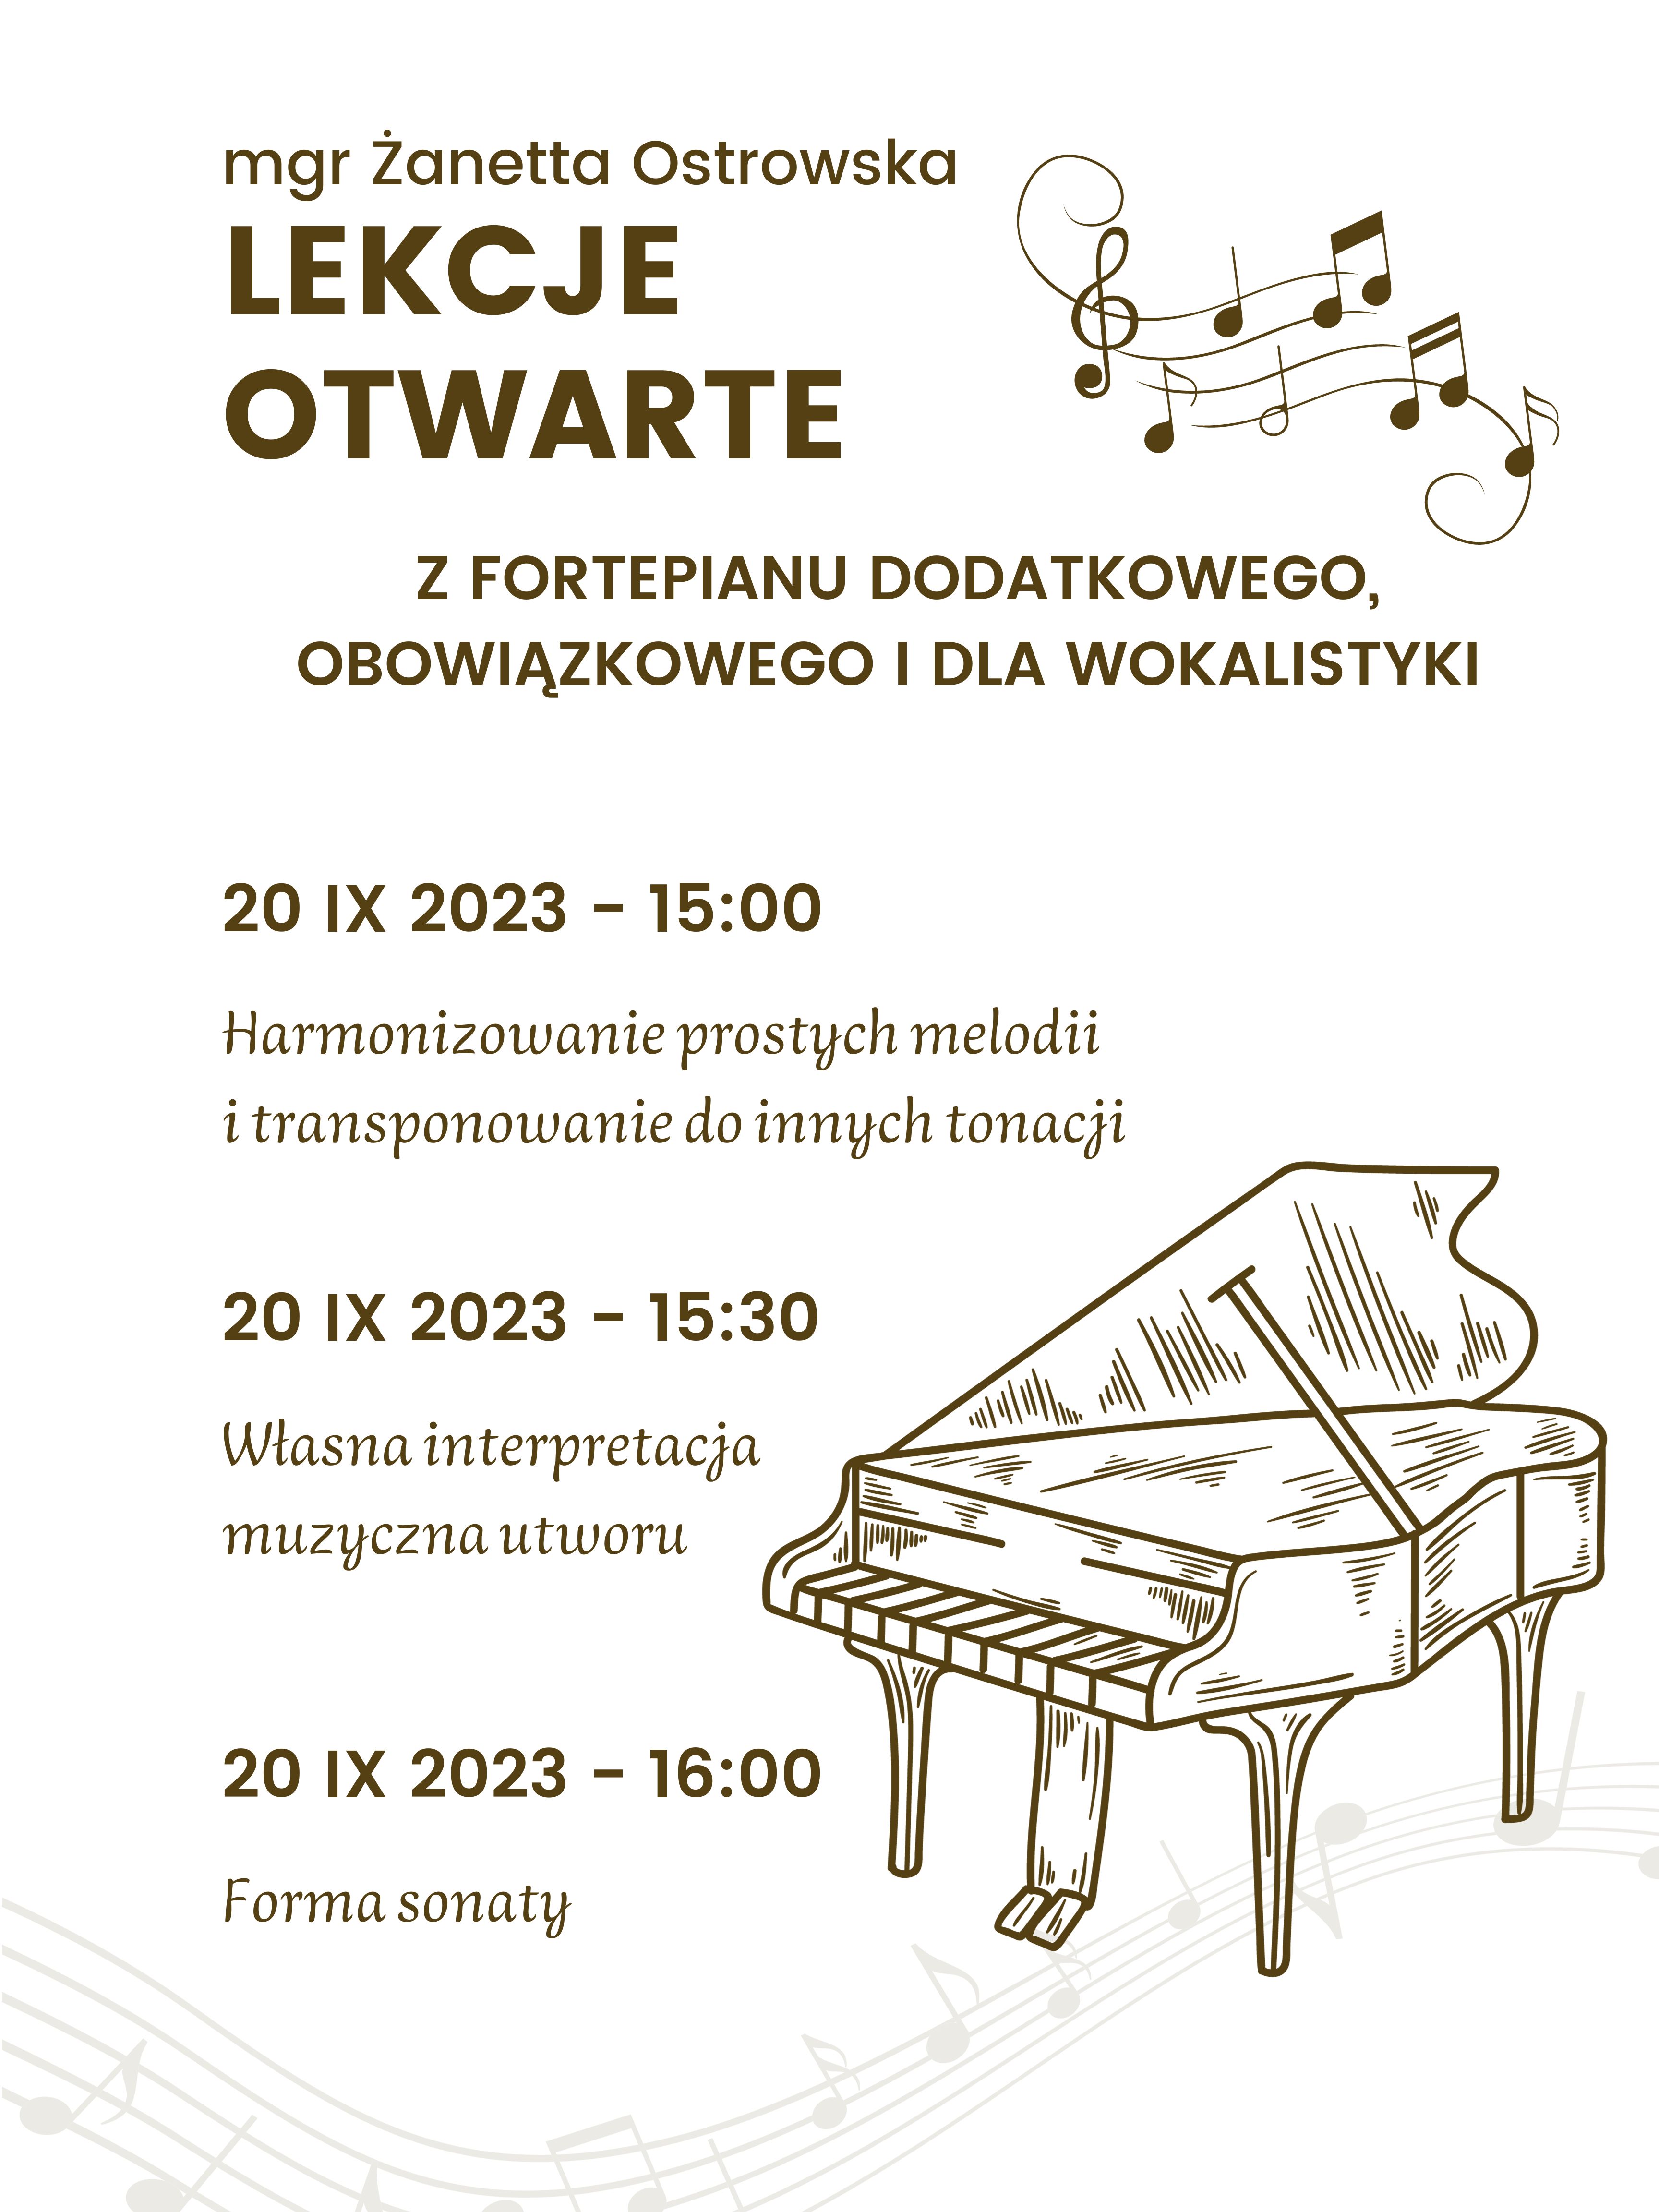 Lekcje otwarte z fortepianów - mgr Żanetta Ostrowska 20.09.2023